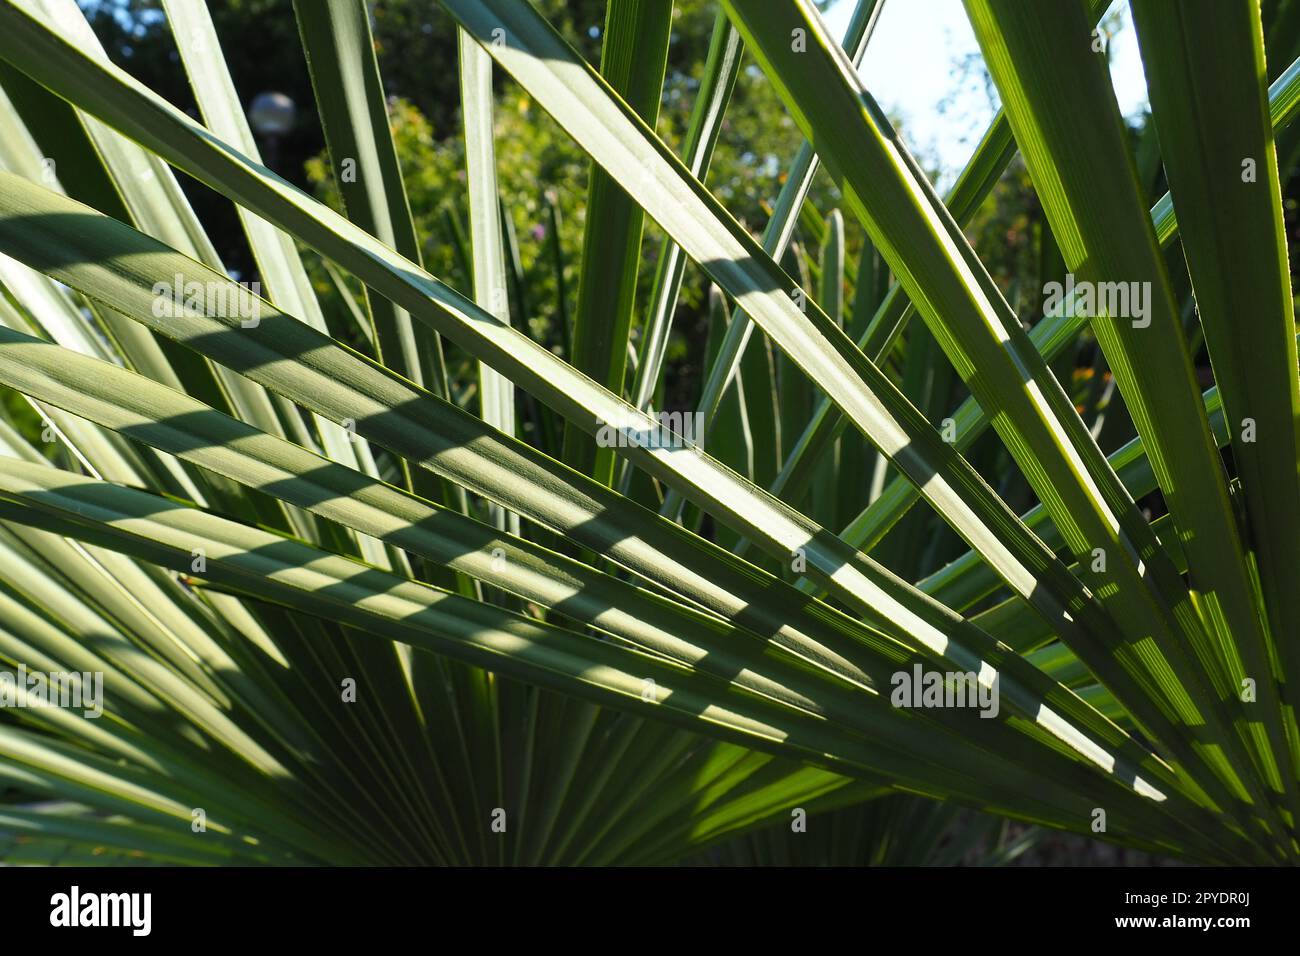 La trama delle foglie di palma è caratterizzata da ombre e luci. Foglie di palma di colore verde chiaro. Splendido sfondo tropicale. Turismo balneare estivo. Foto Stock